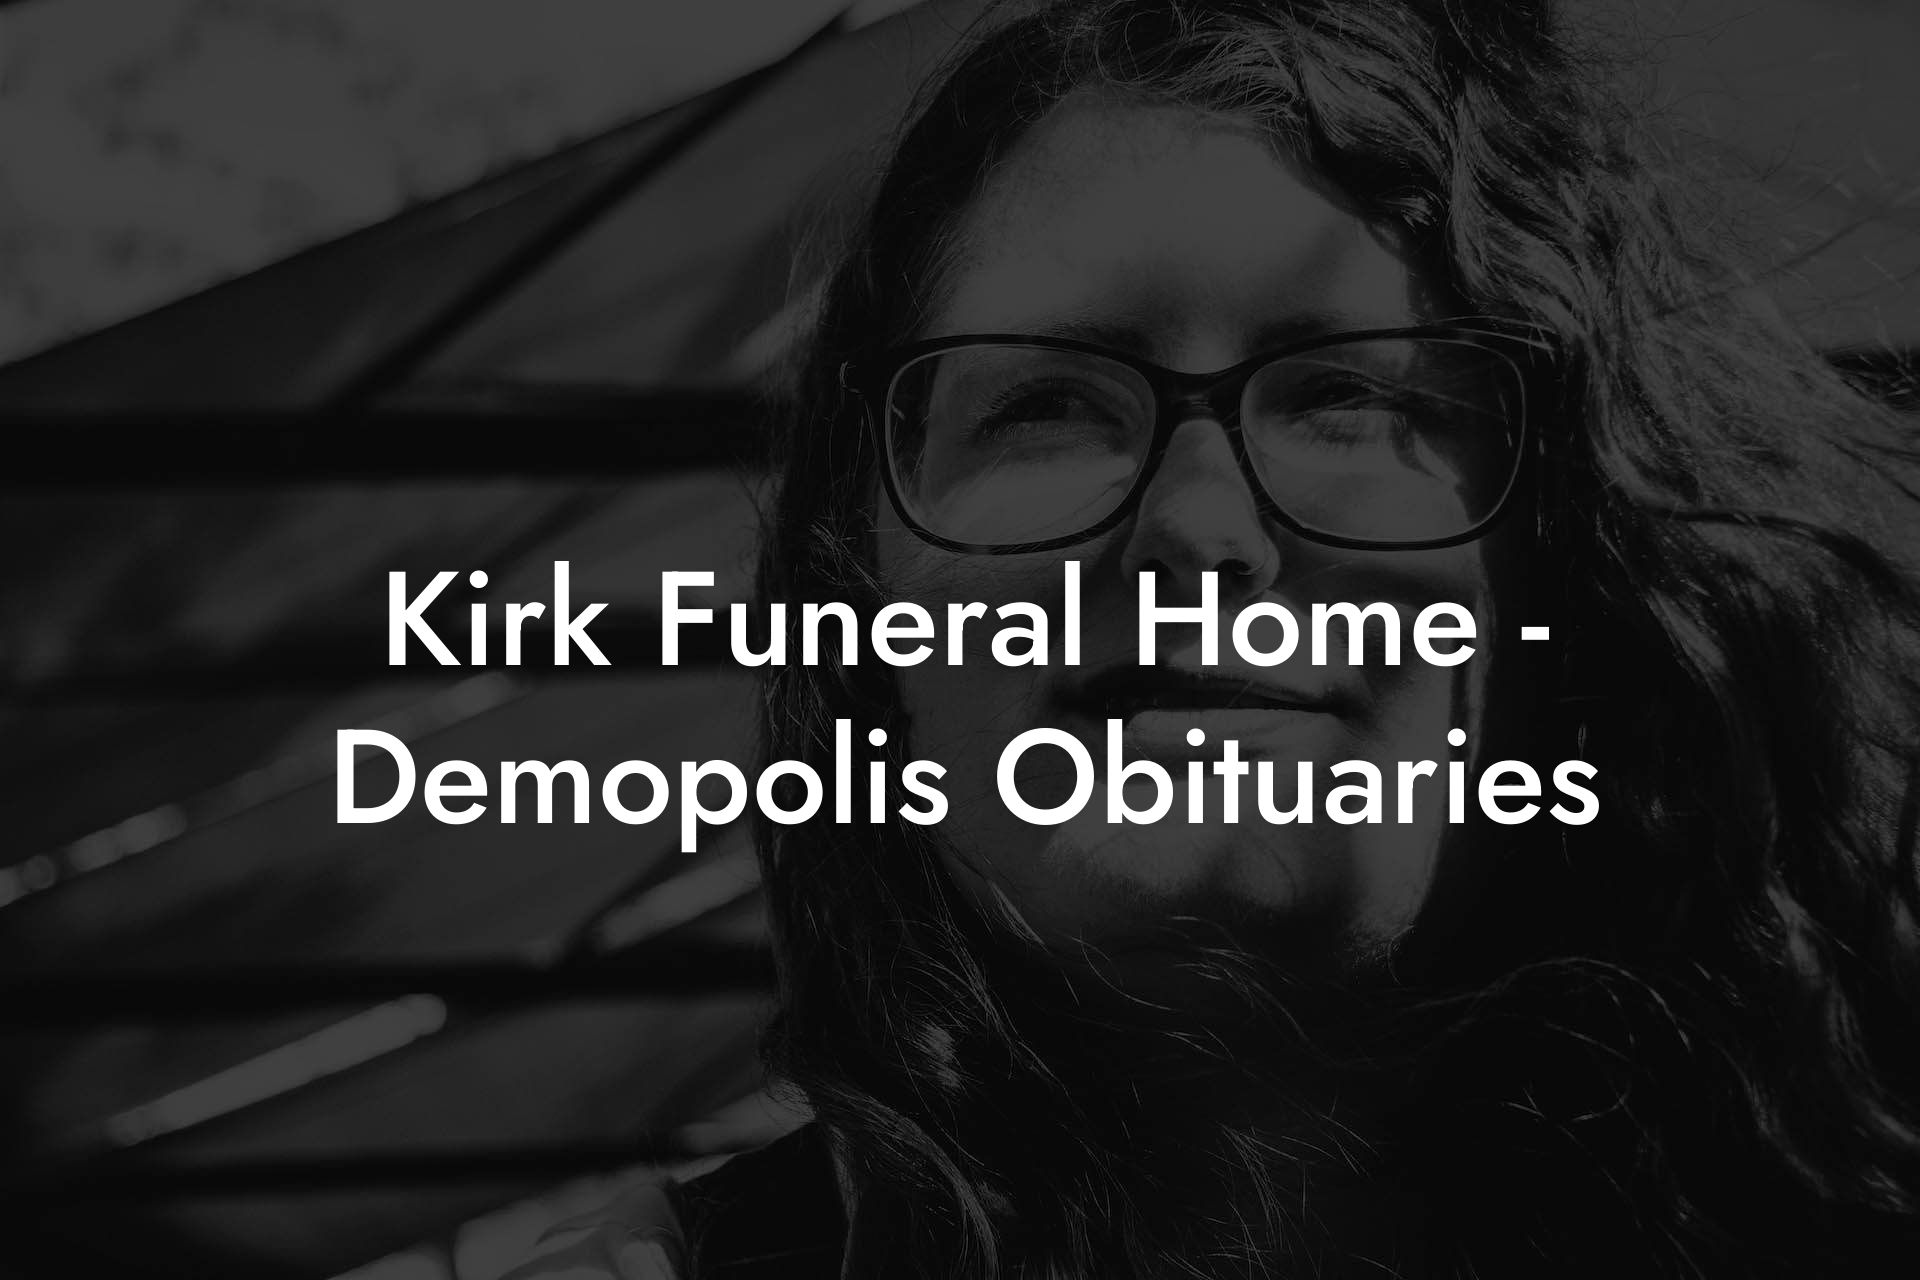 Kirk Funeral Home - Demopolis Obituaries